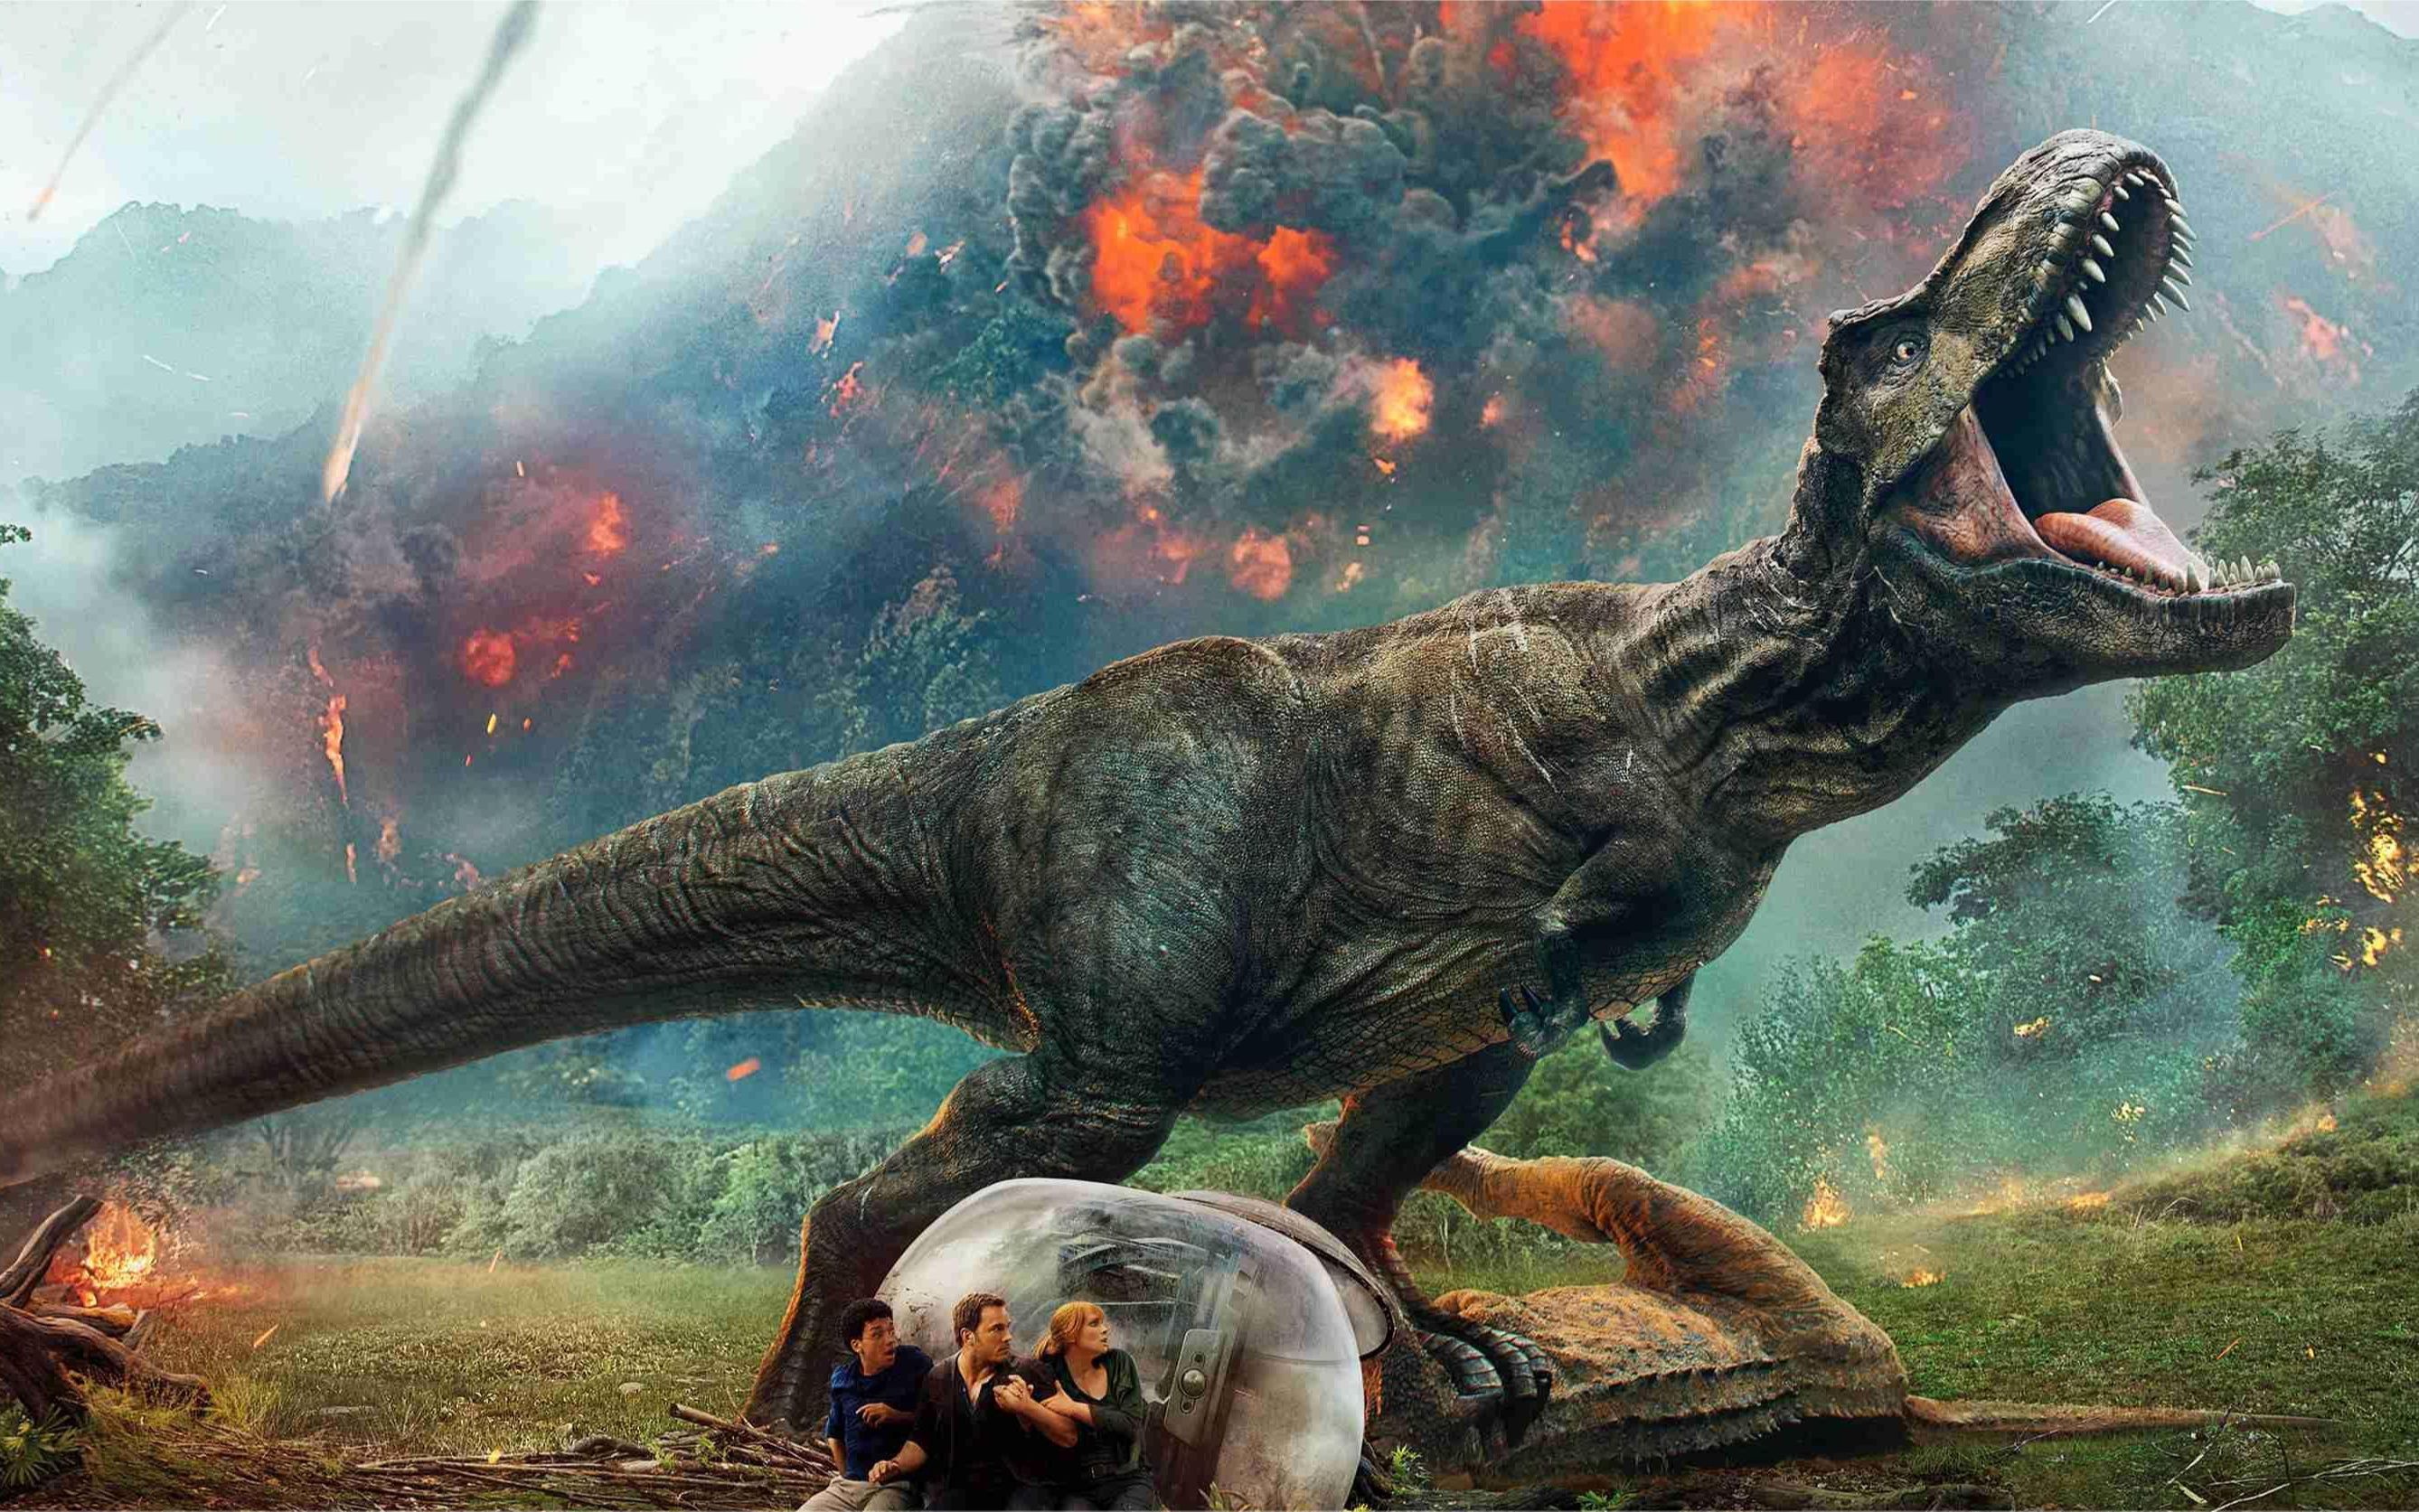 《第一集》侏罗纪世界,科学家培育出混血暴虐霸王龙!